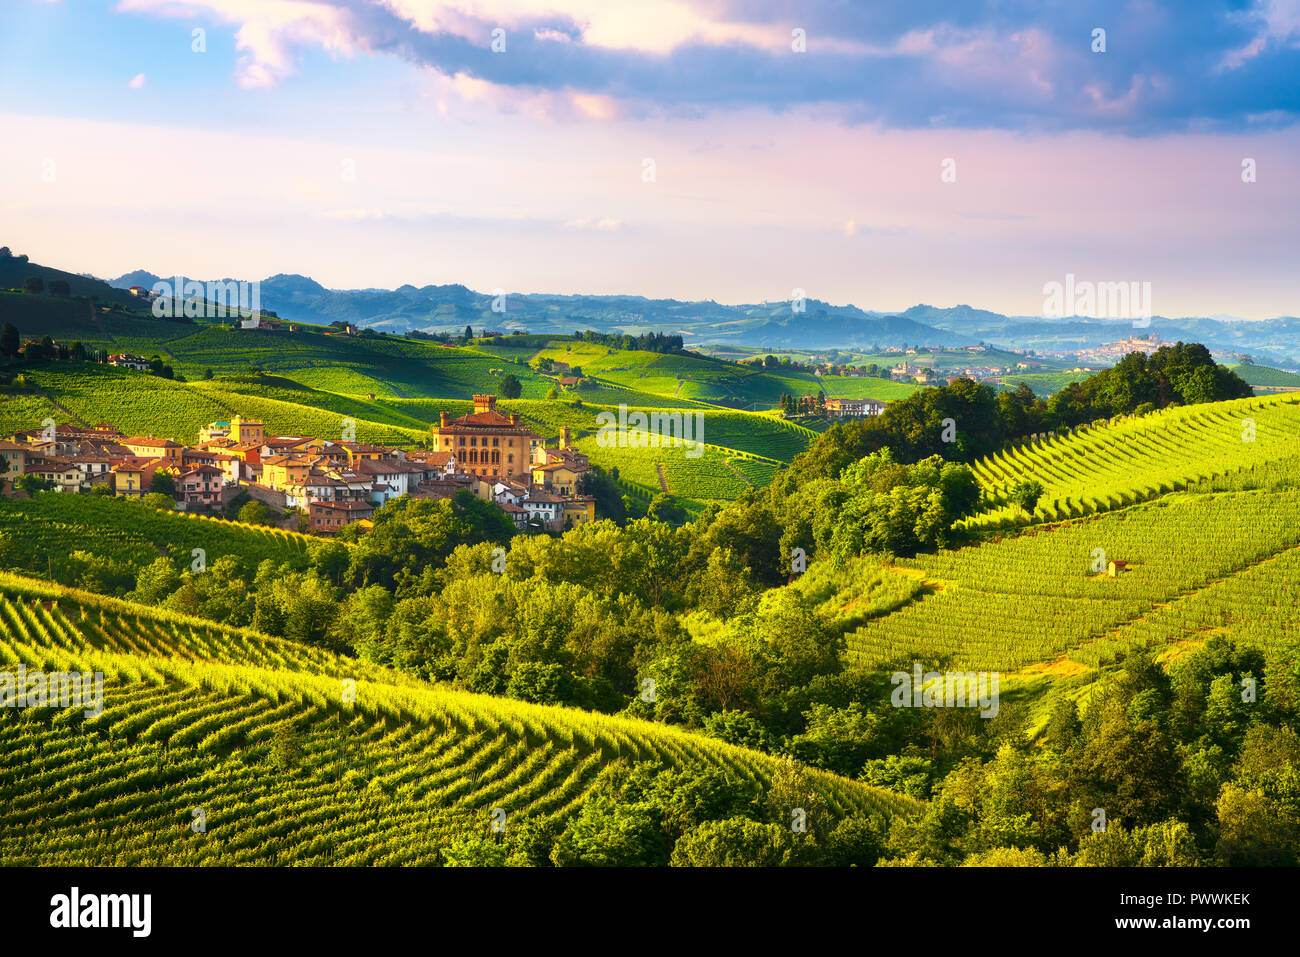 Les vignobles des Langhe, Barolo panorama Village, Site de l'Unesco, Piémont, Italie du nord de l'Europe. Banque D'Images